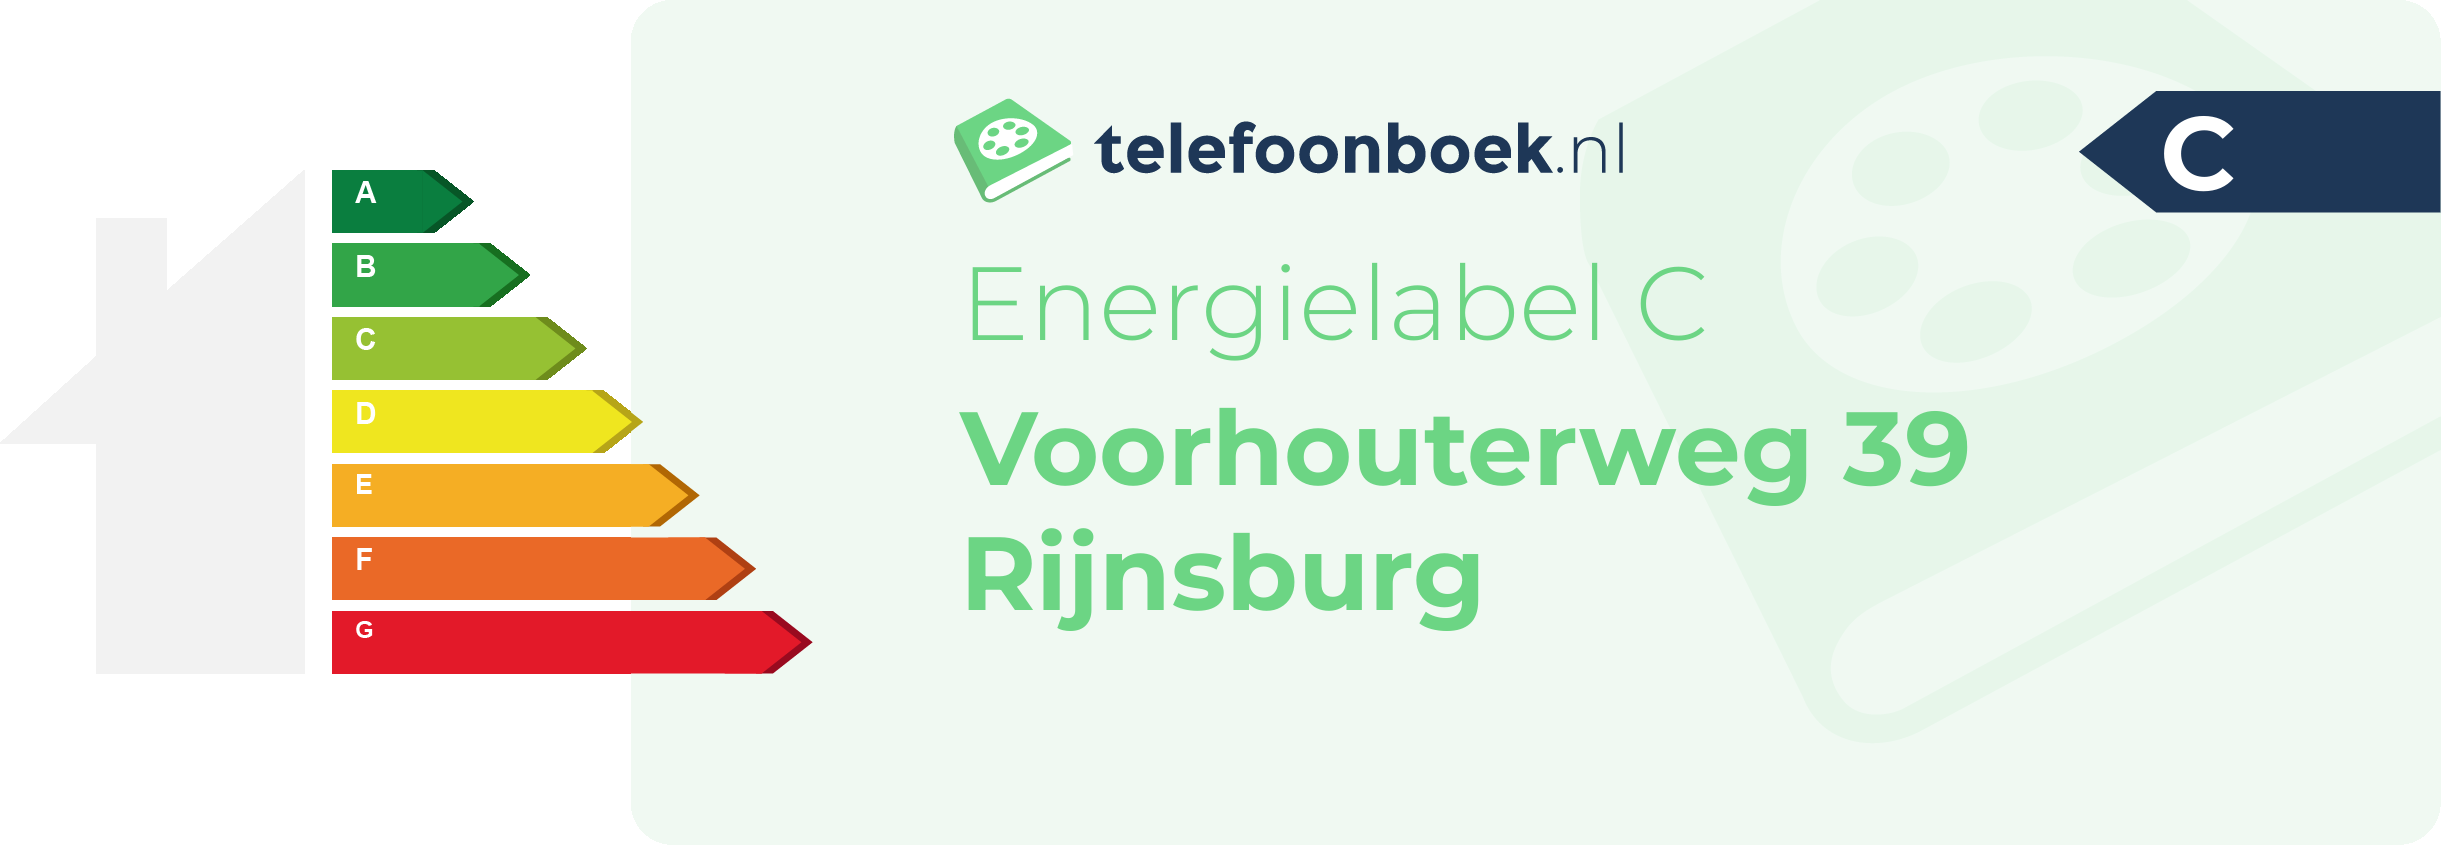 Energielabel Voorhouterweg 39 Rijnsburg